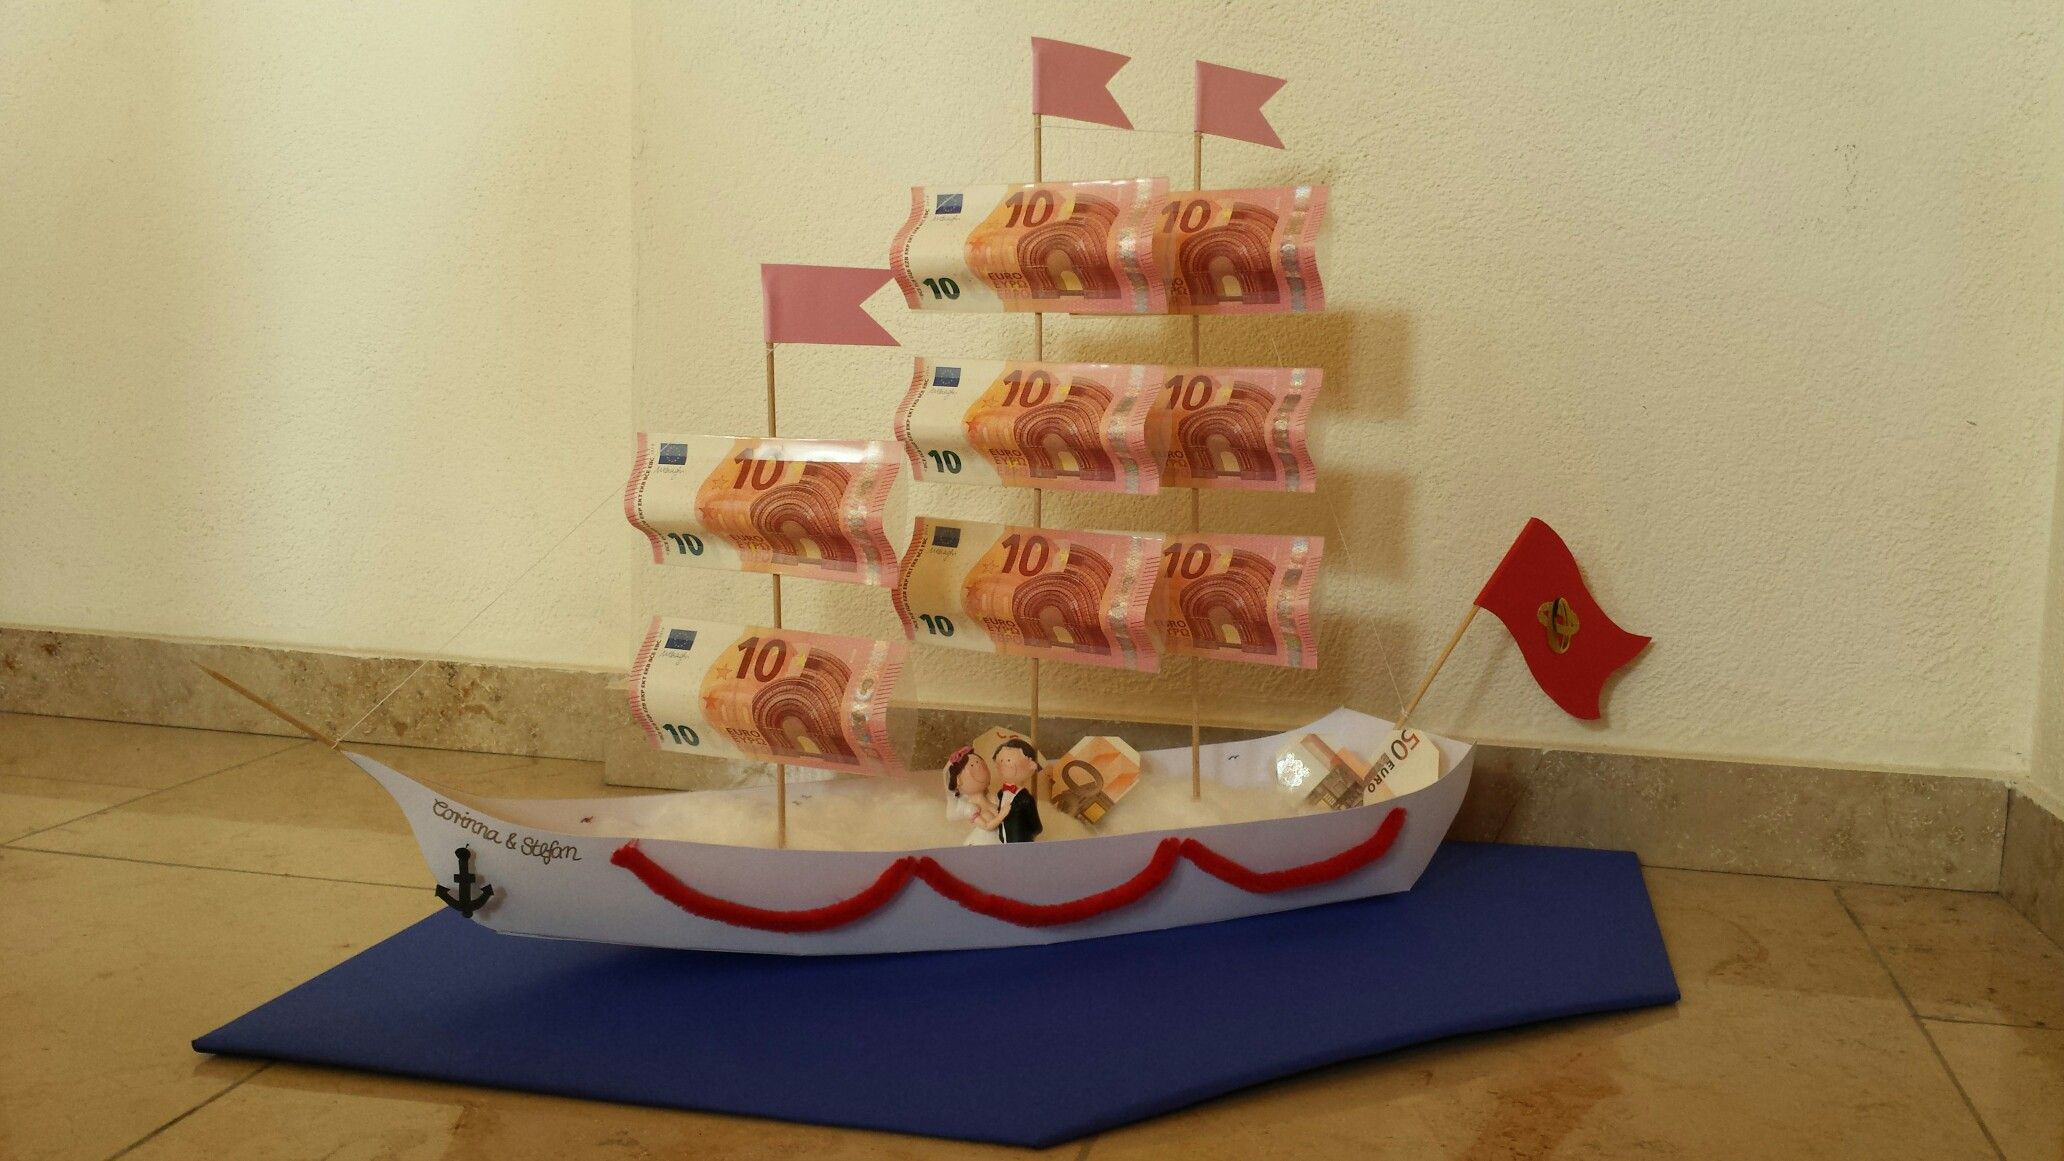 Hochzeit Geschenk Originell
 DIY Geldgeschenk zur Hochzeit Segelschiff